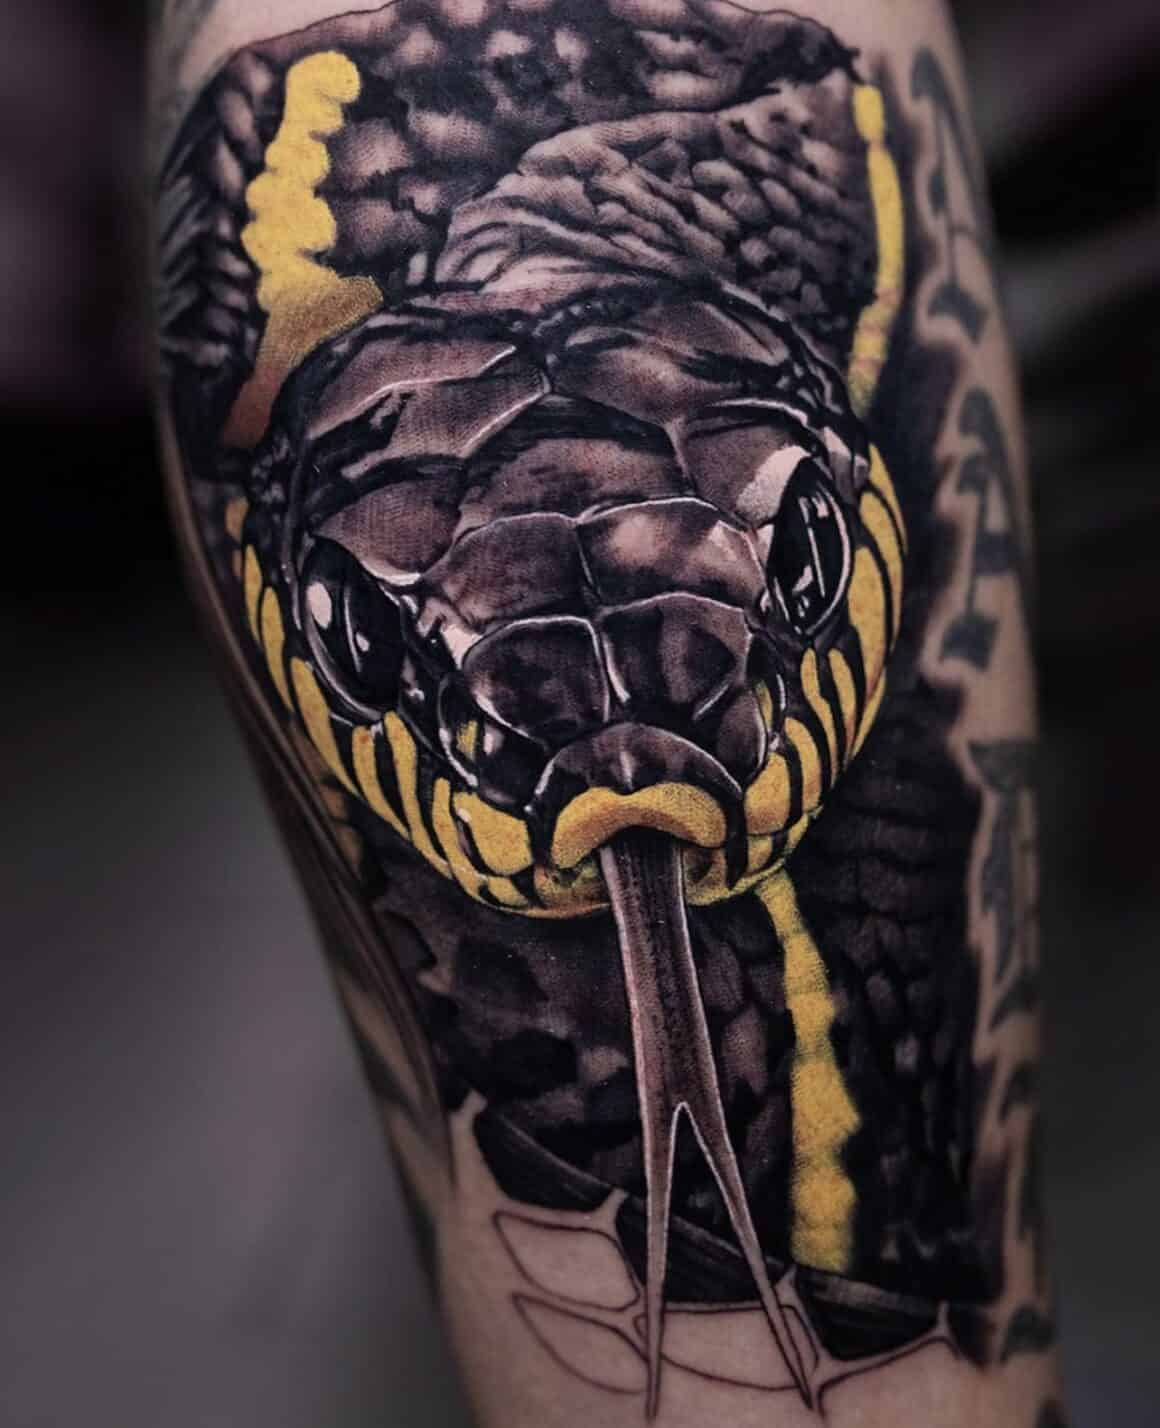 Snake arm tattoo made by London Tattoo Artist Gabriele Cardosi at Red Point  tattoo U.K : r/tattoos